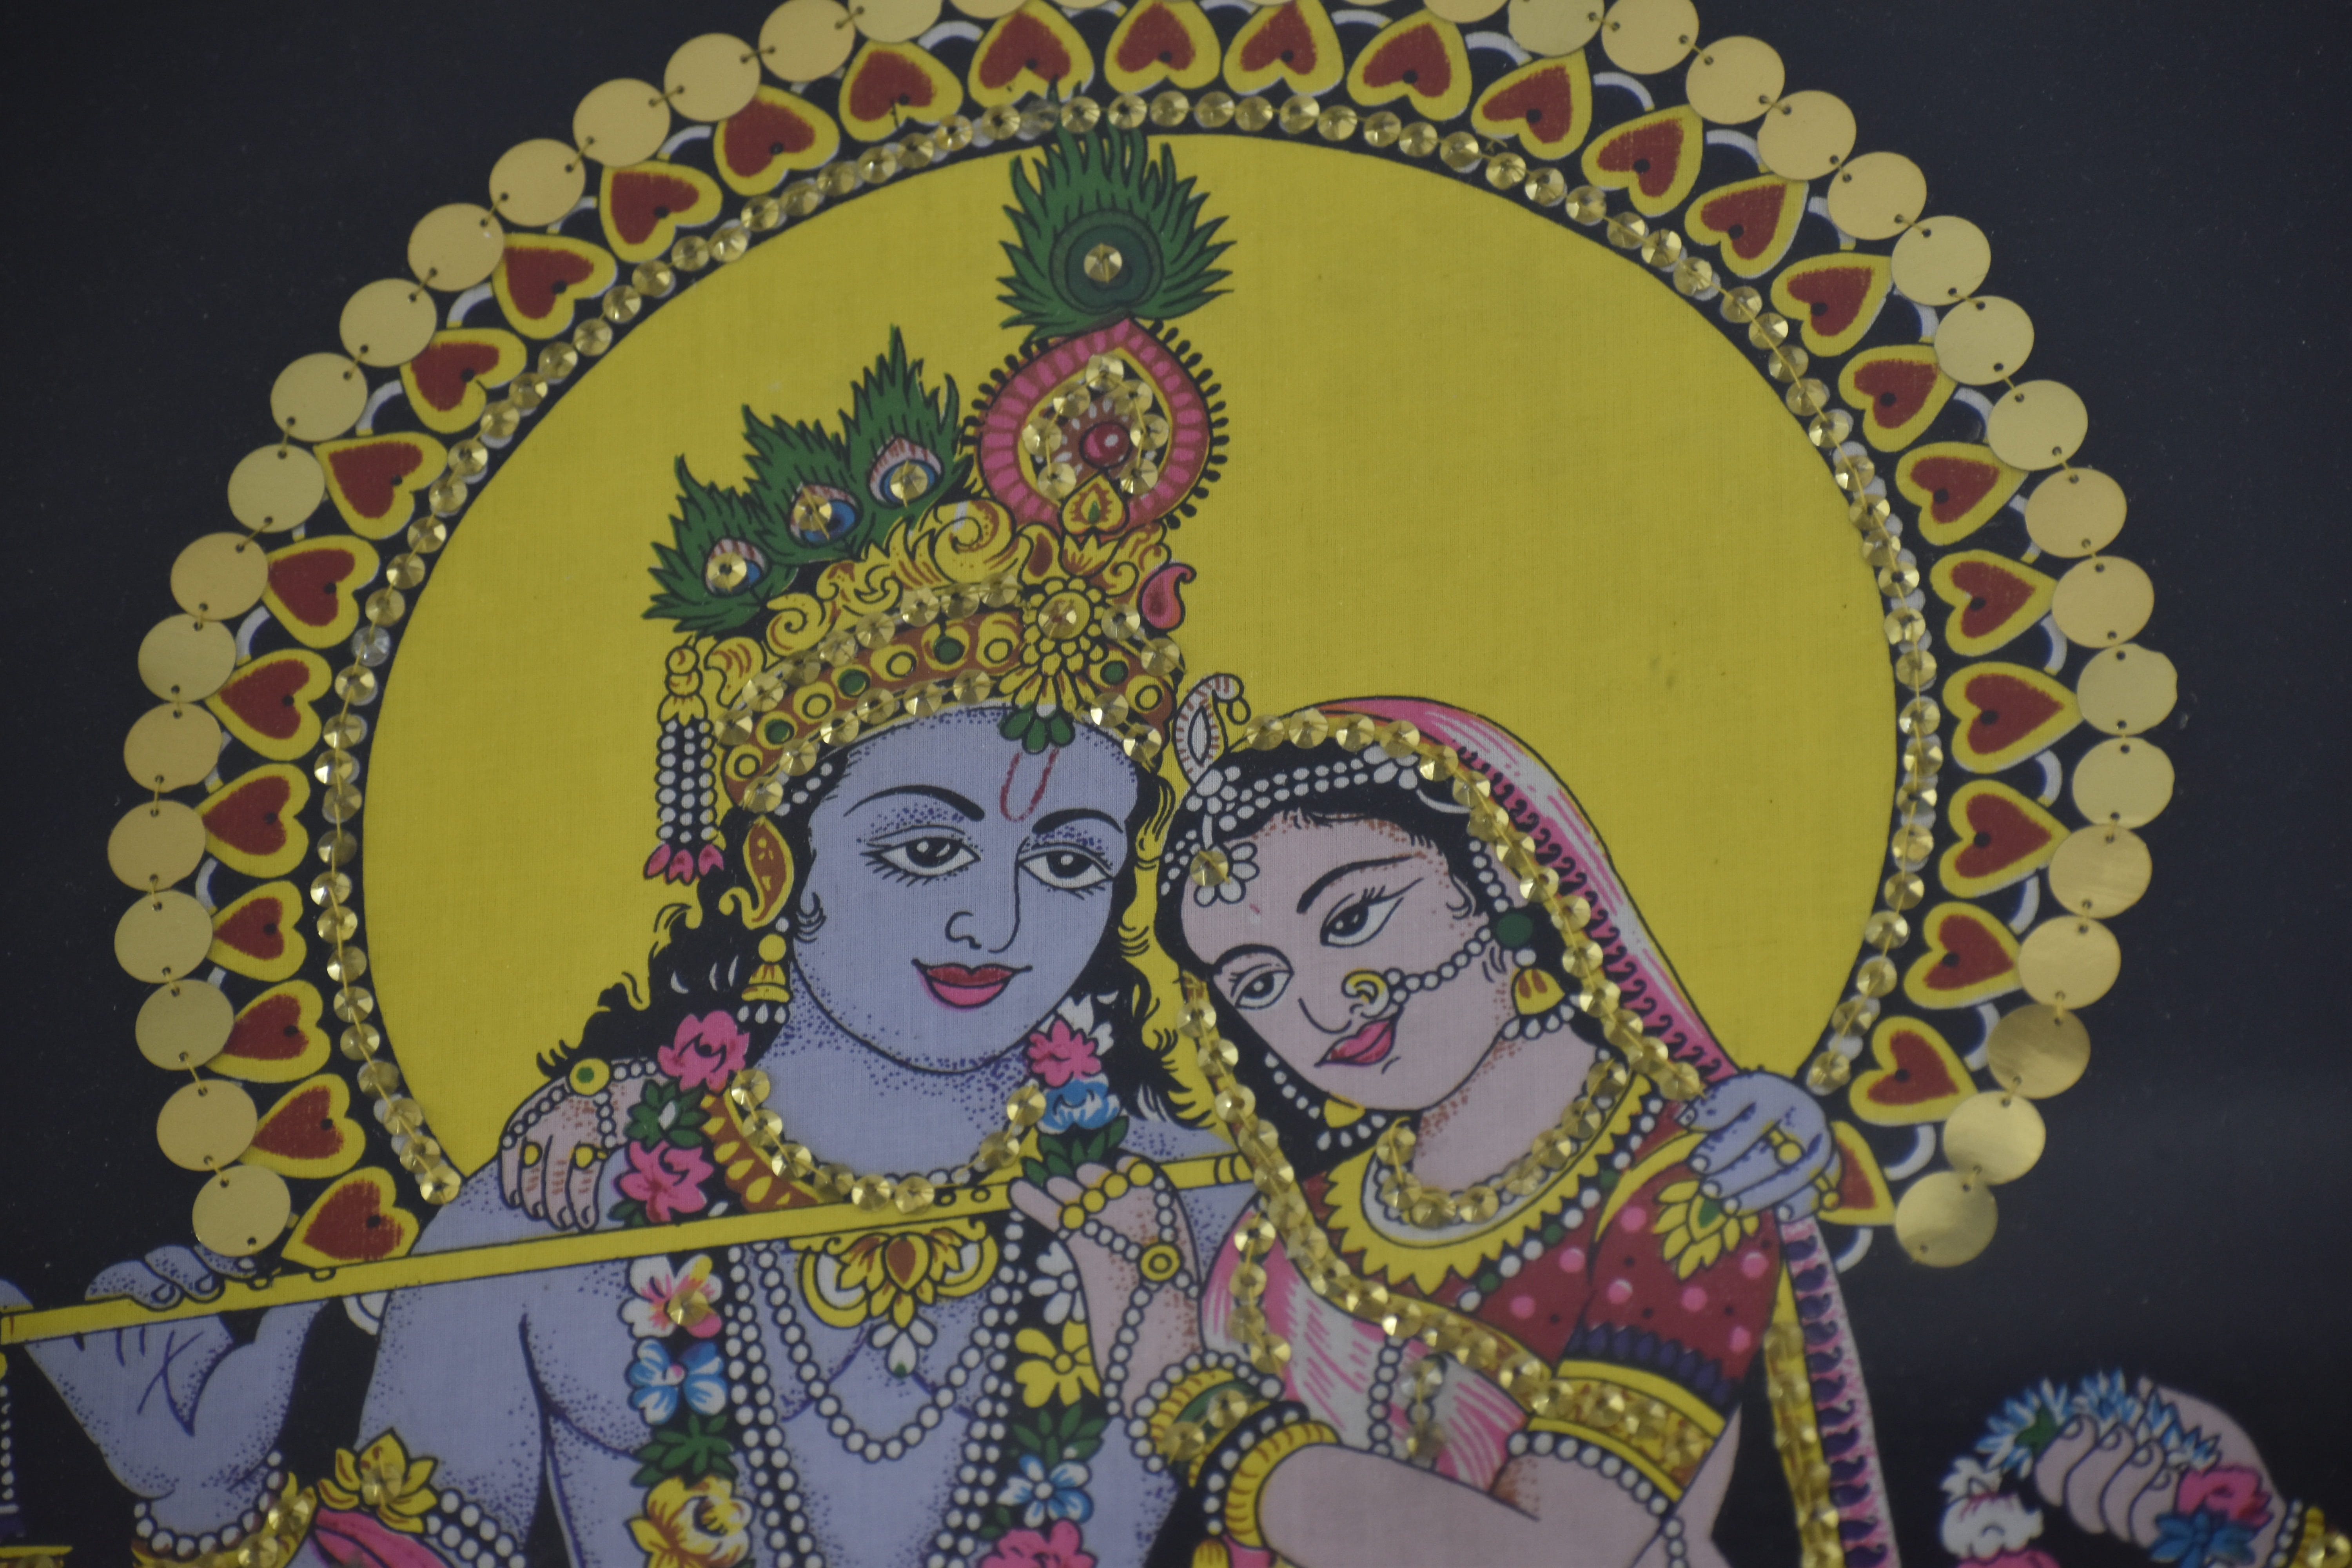 radha-krishna, scenery, handicraft, art and craft, creativity